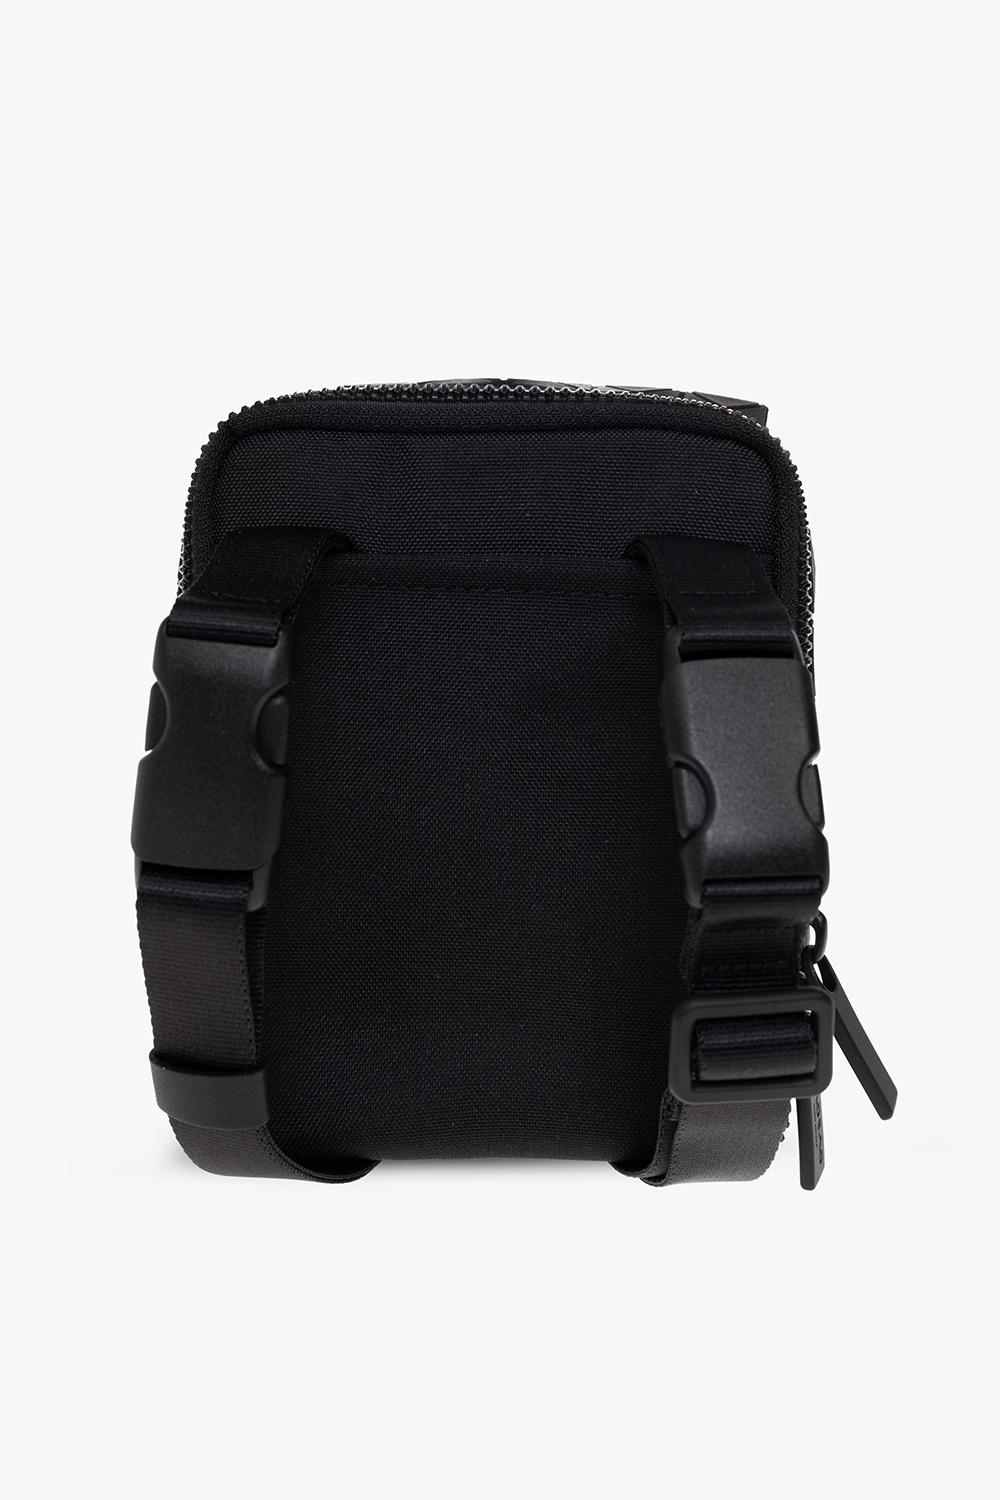 Issey Miyake Bao Bao ‘Beetle’ shoulder bag